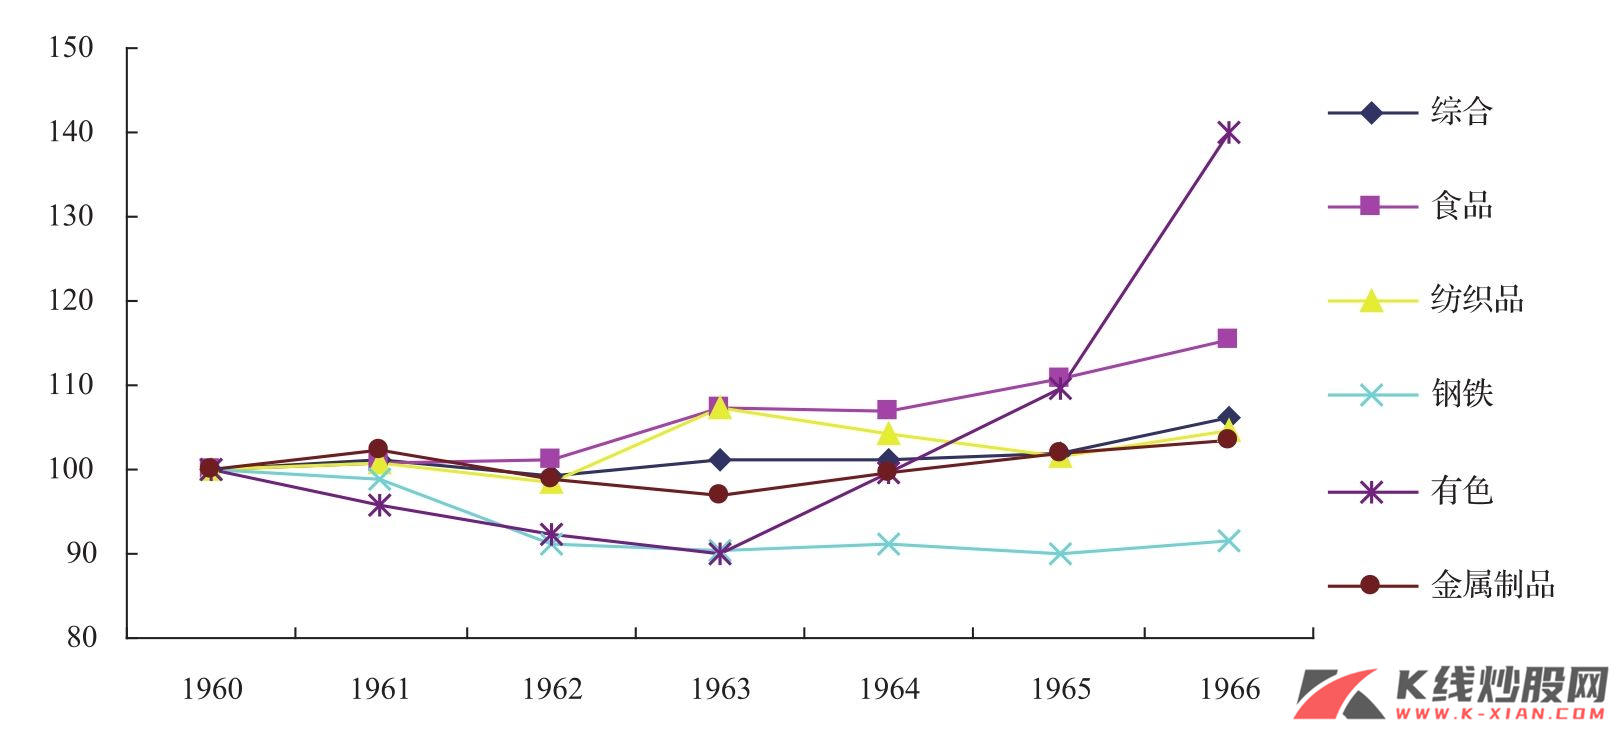 工业化期间日本的批发价格分类指数（1960—1966年）之二